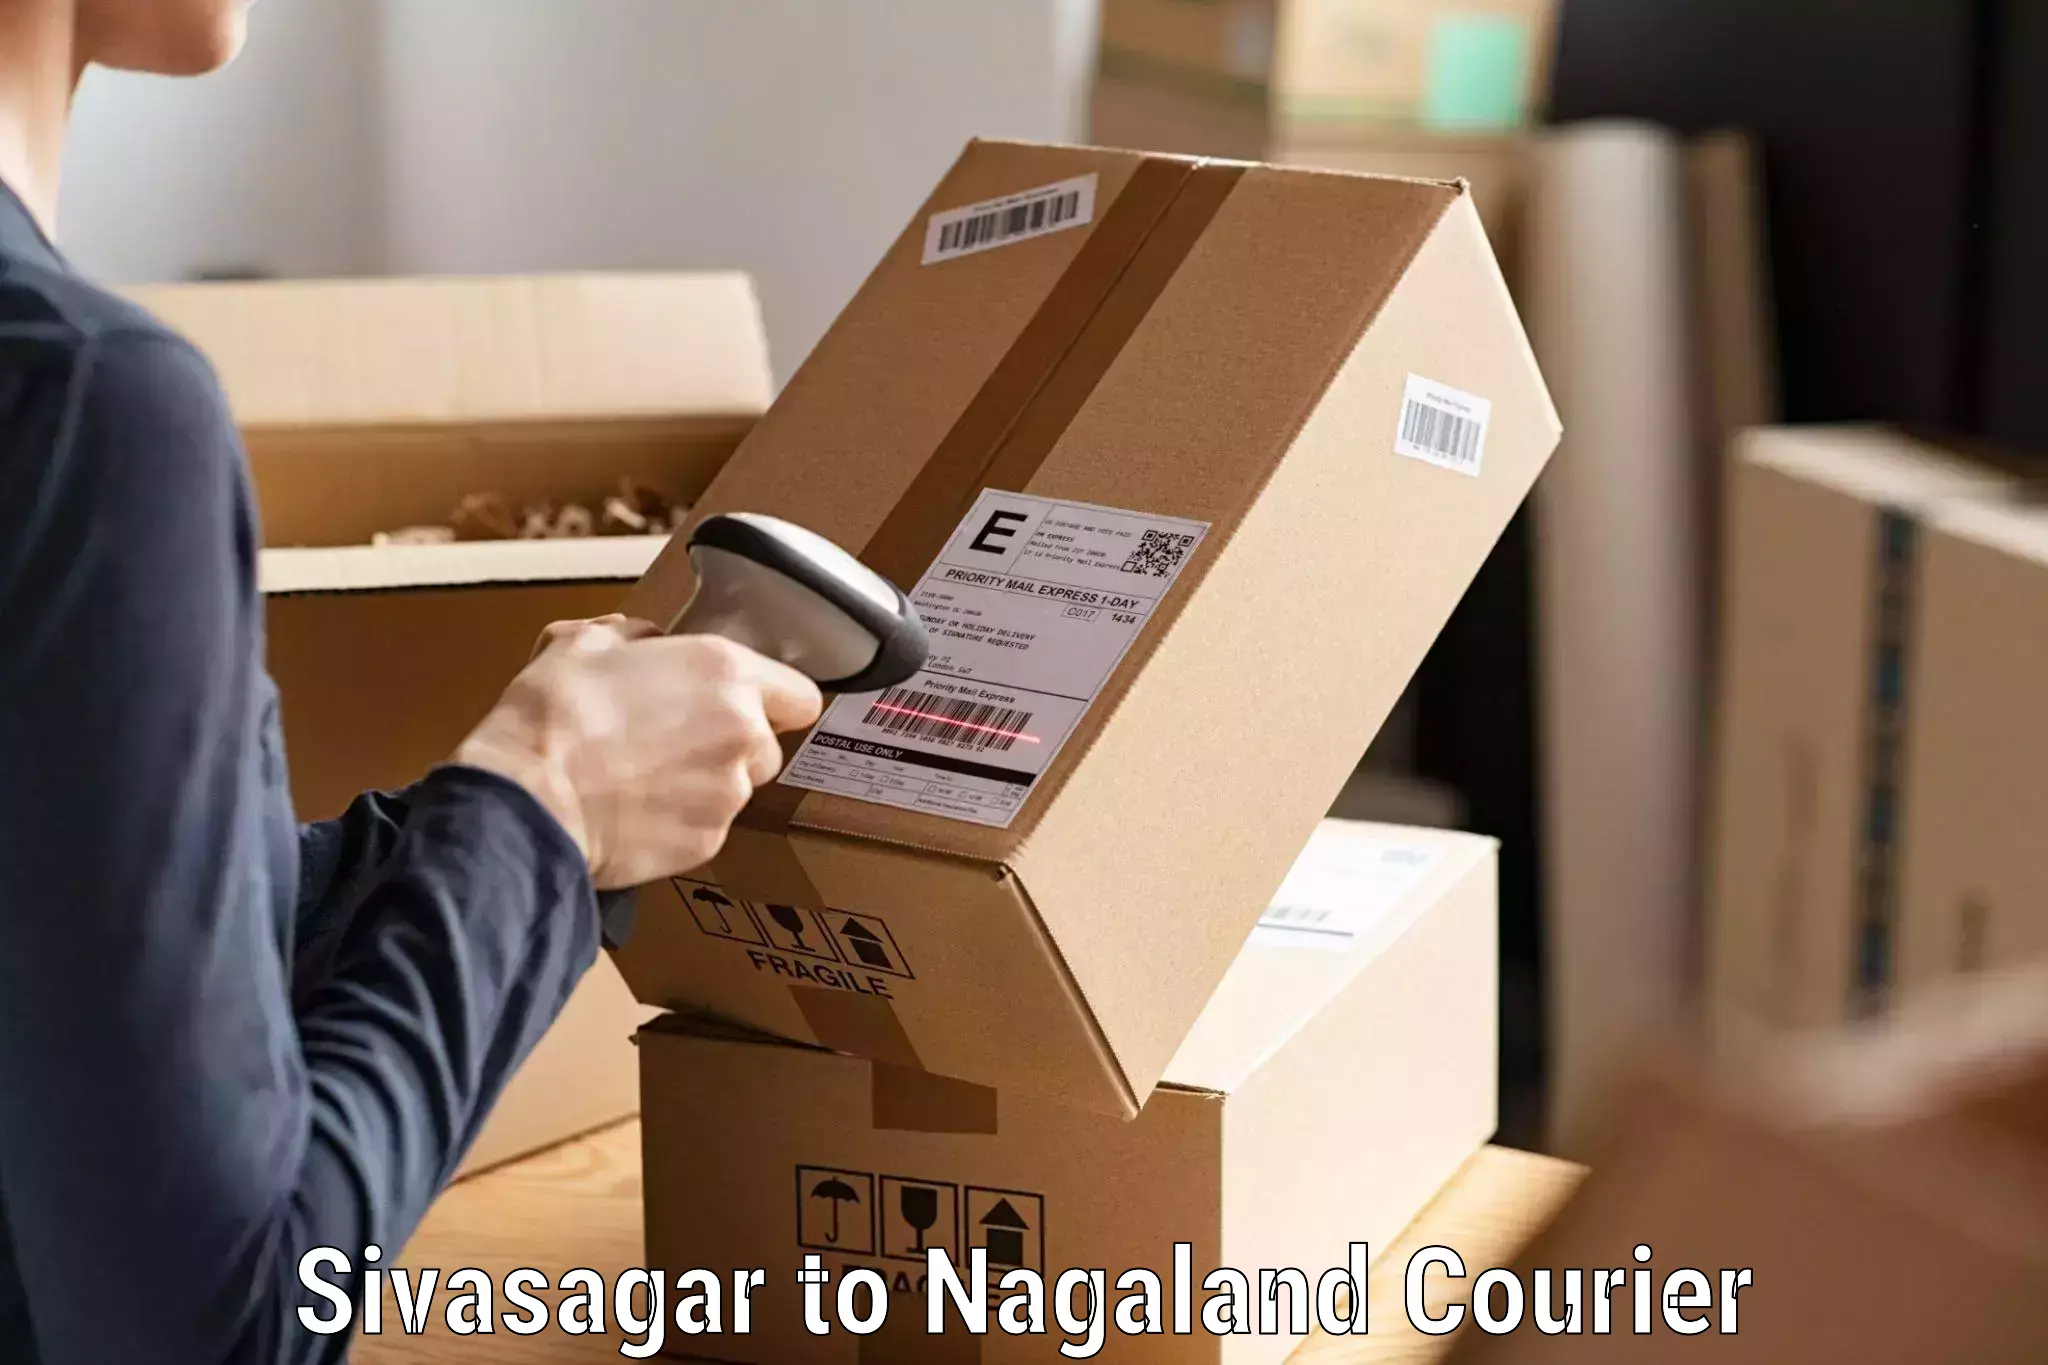 Personal parcel delivery Sivasagar to Peren